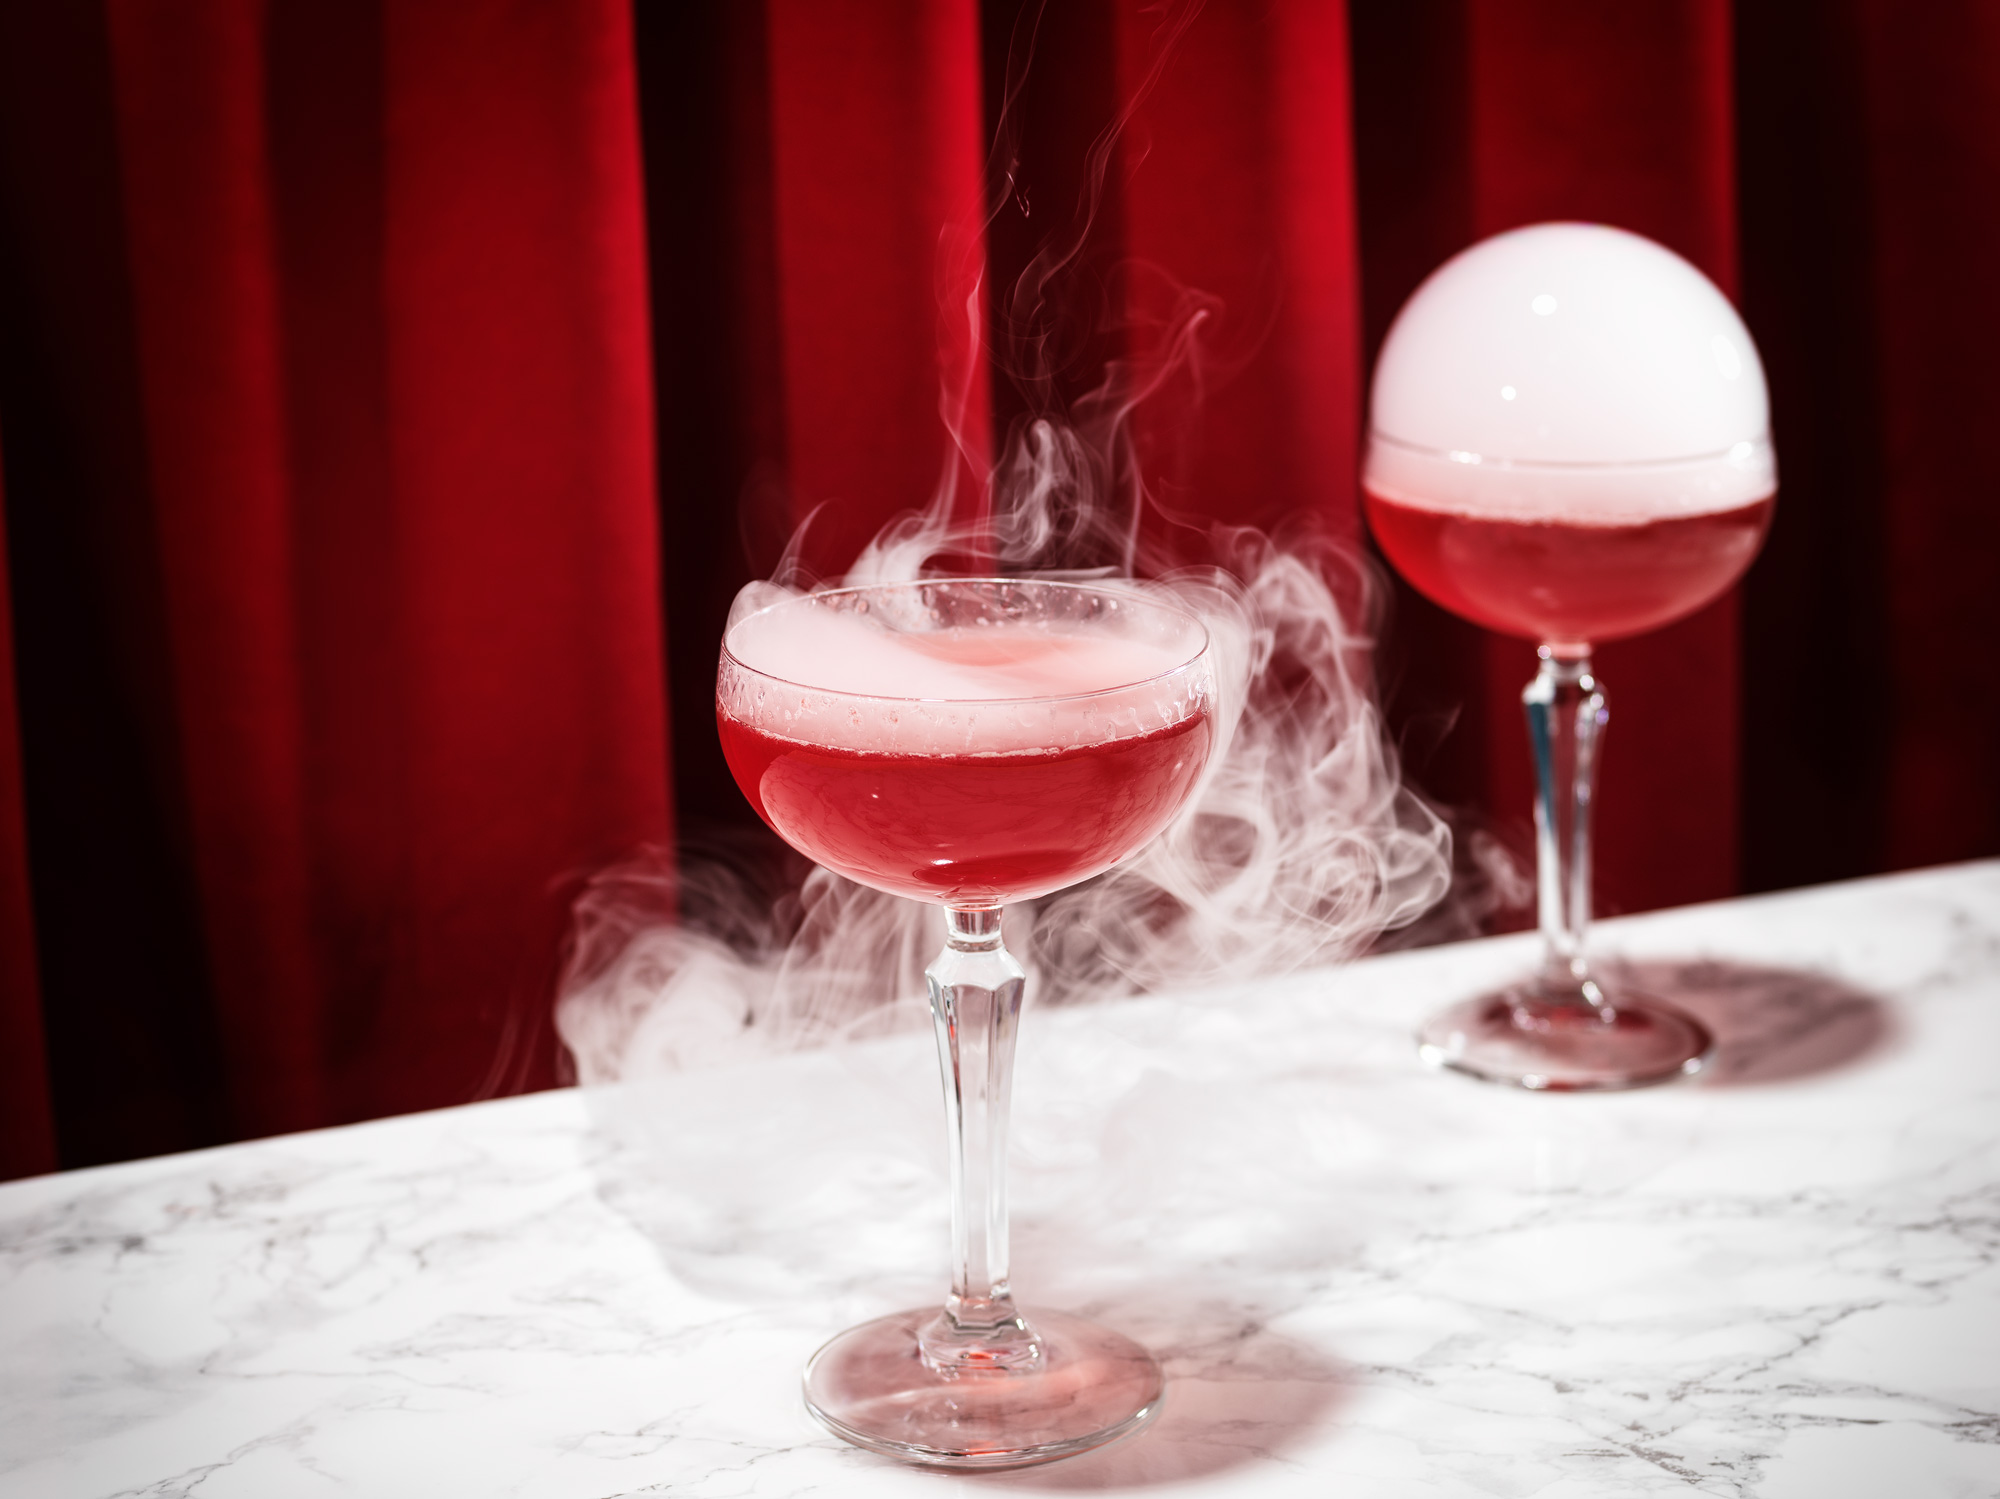 bildstadt Foodfotografie – Kenny Klein Cocktails - roter Cocktail mit geplatzter Rauchblase und rotem Vorhang in Hintergrund